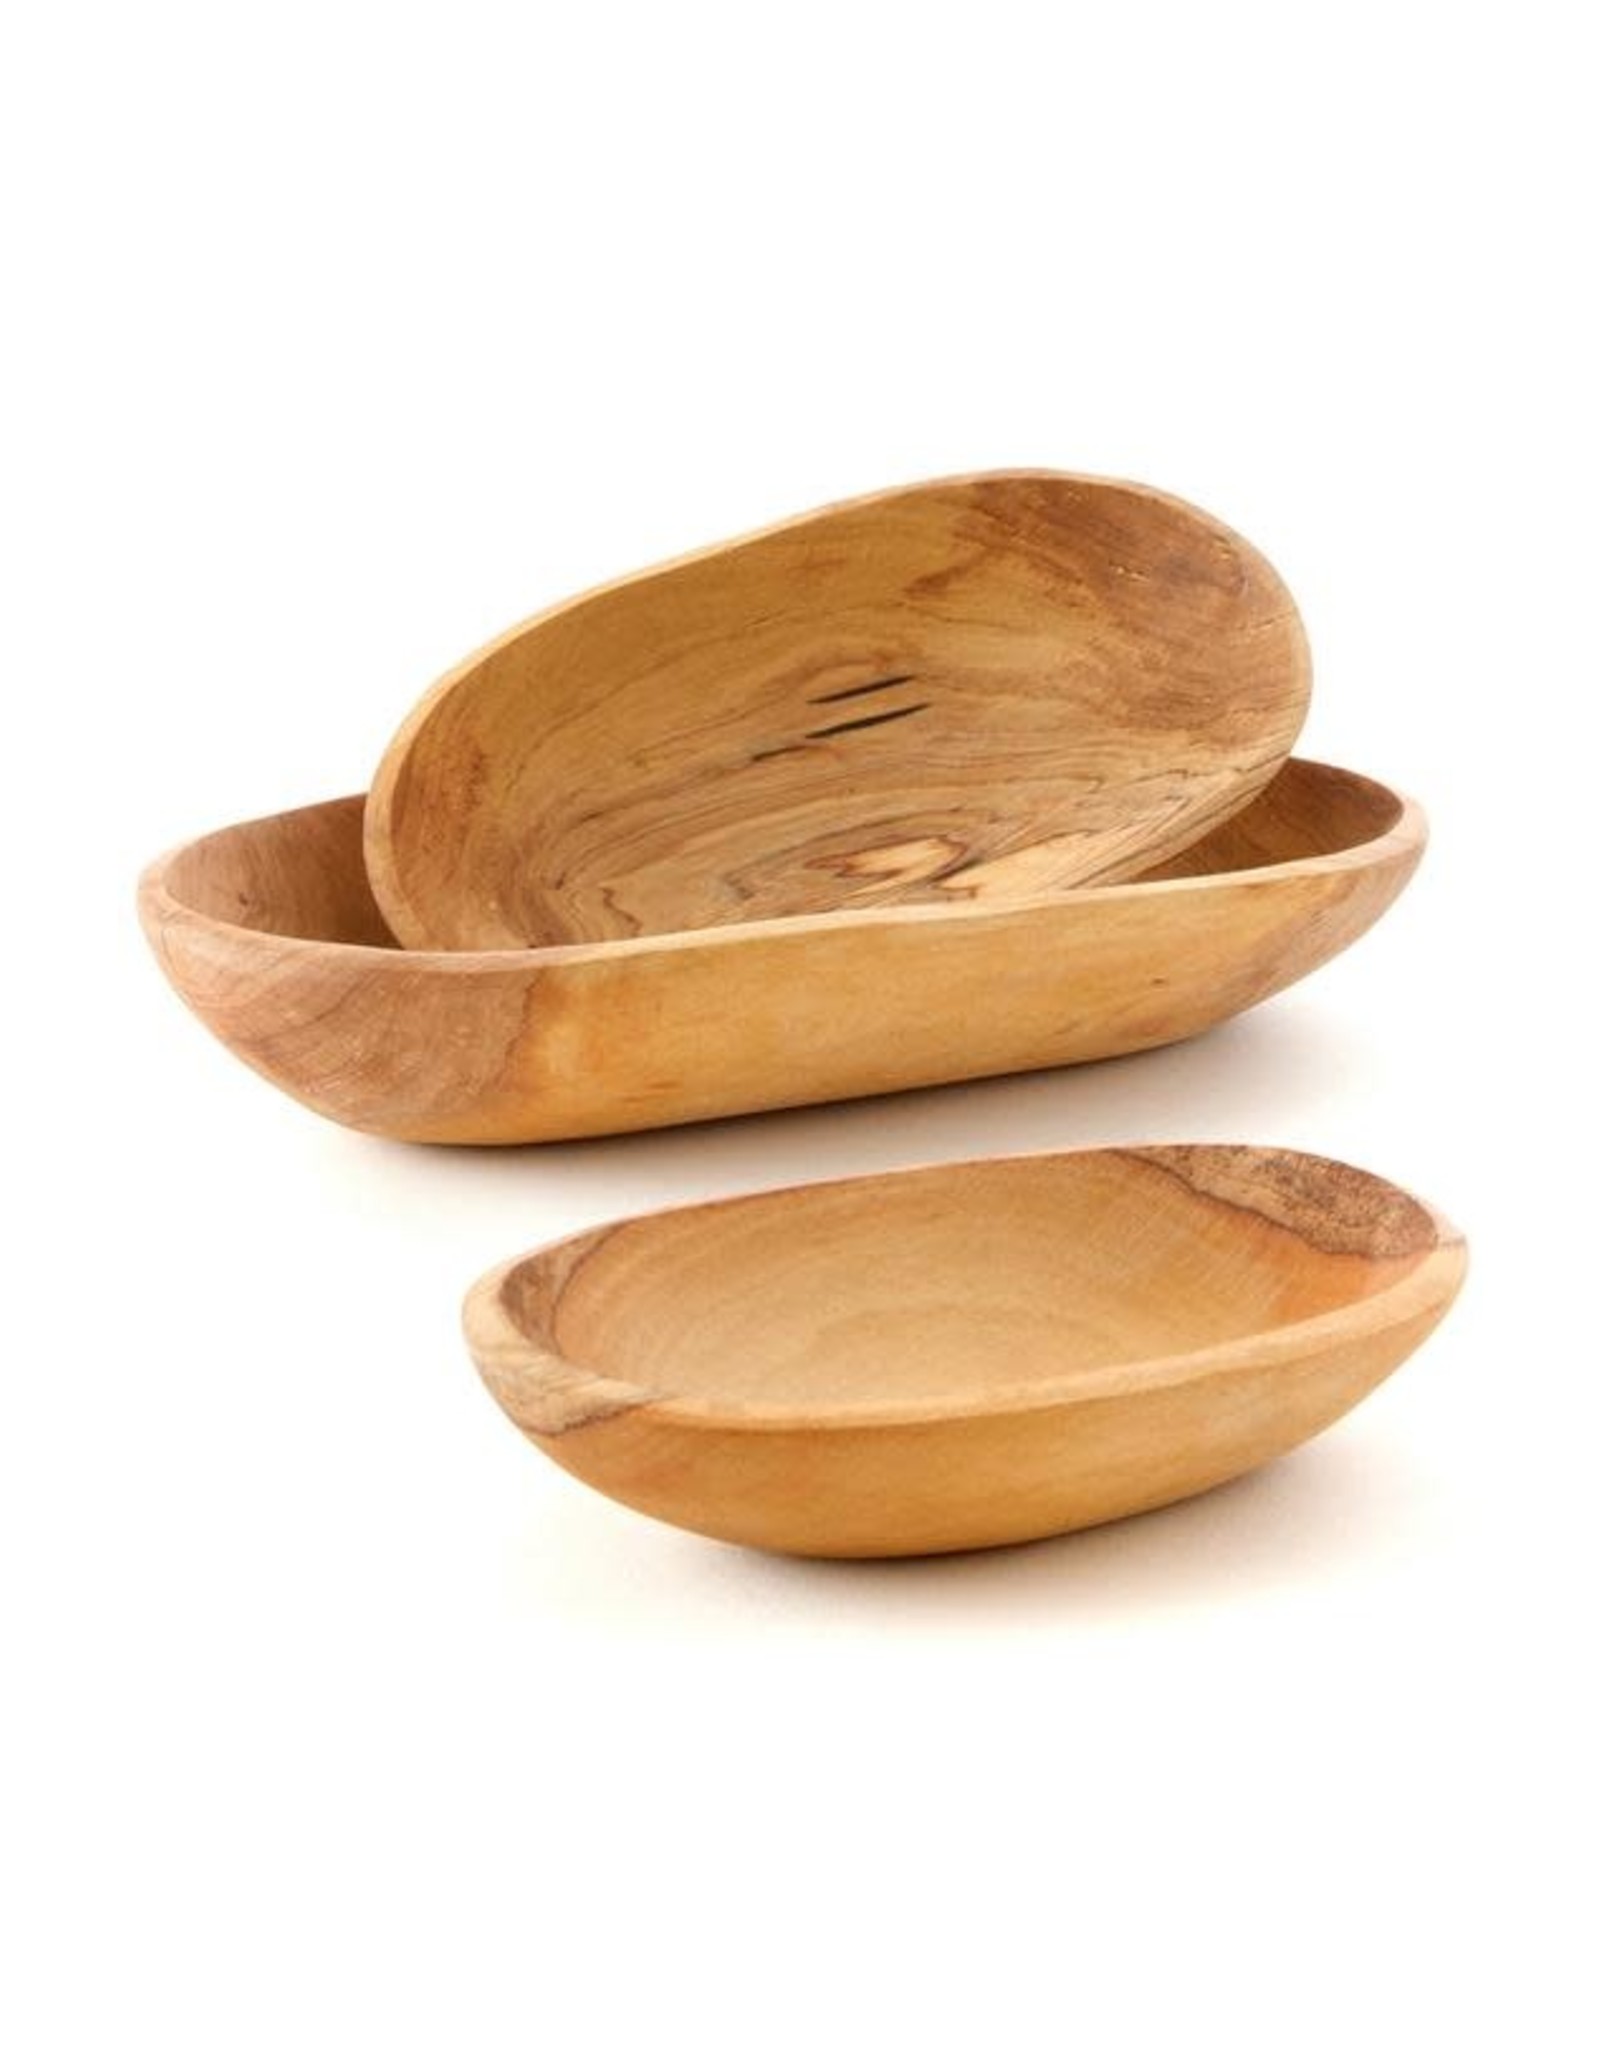 Swahili Wholesale Wild Olive Wood Nesting Bowls, set of 3. Kenya